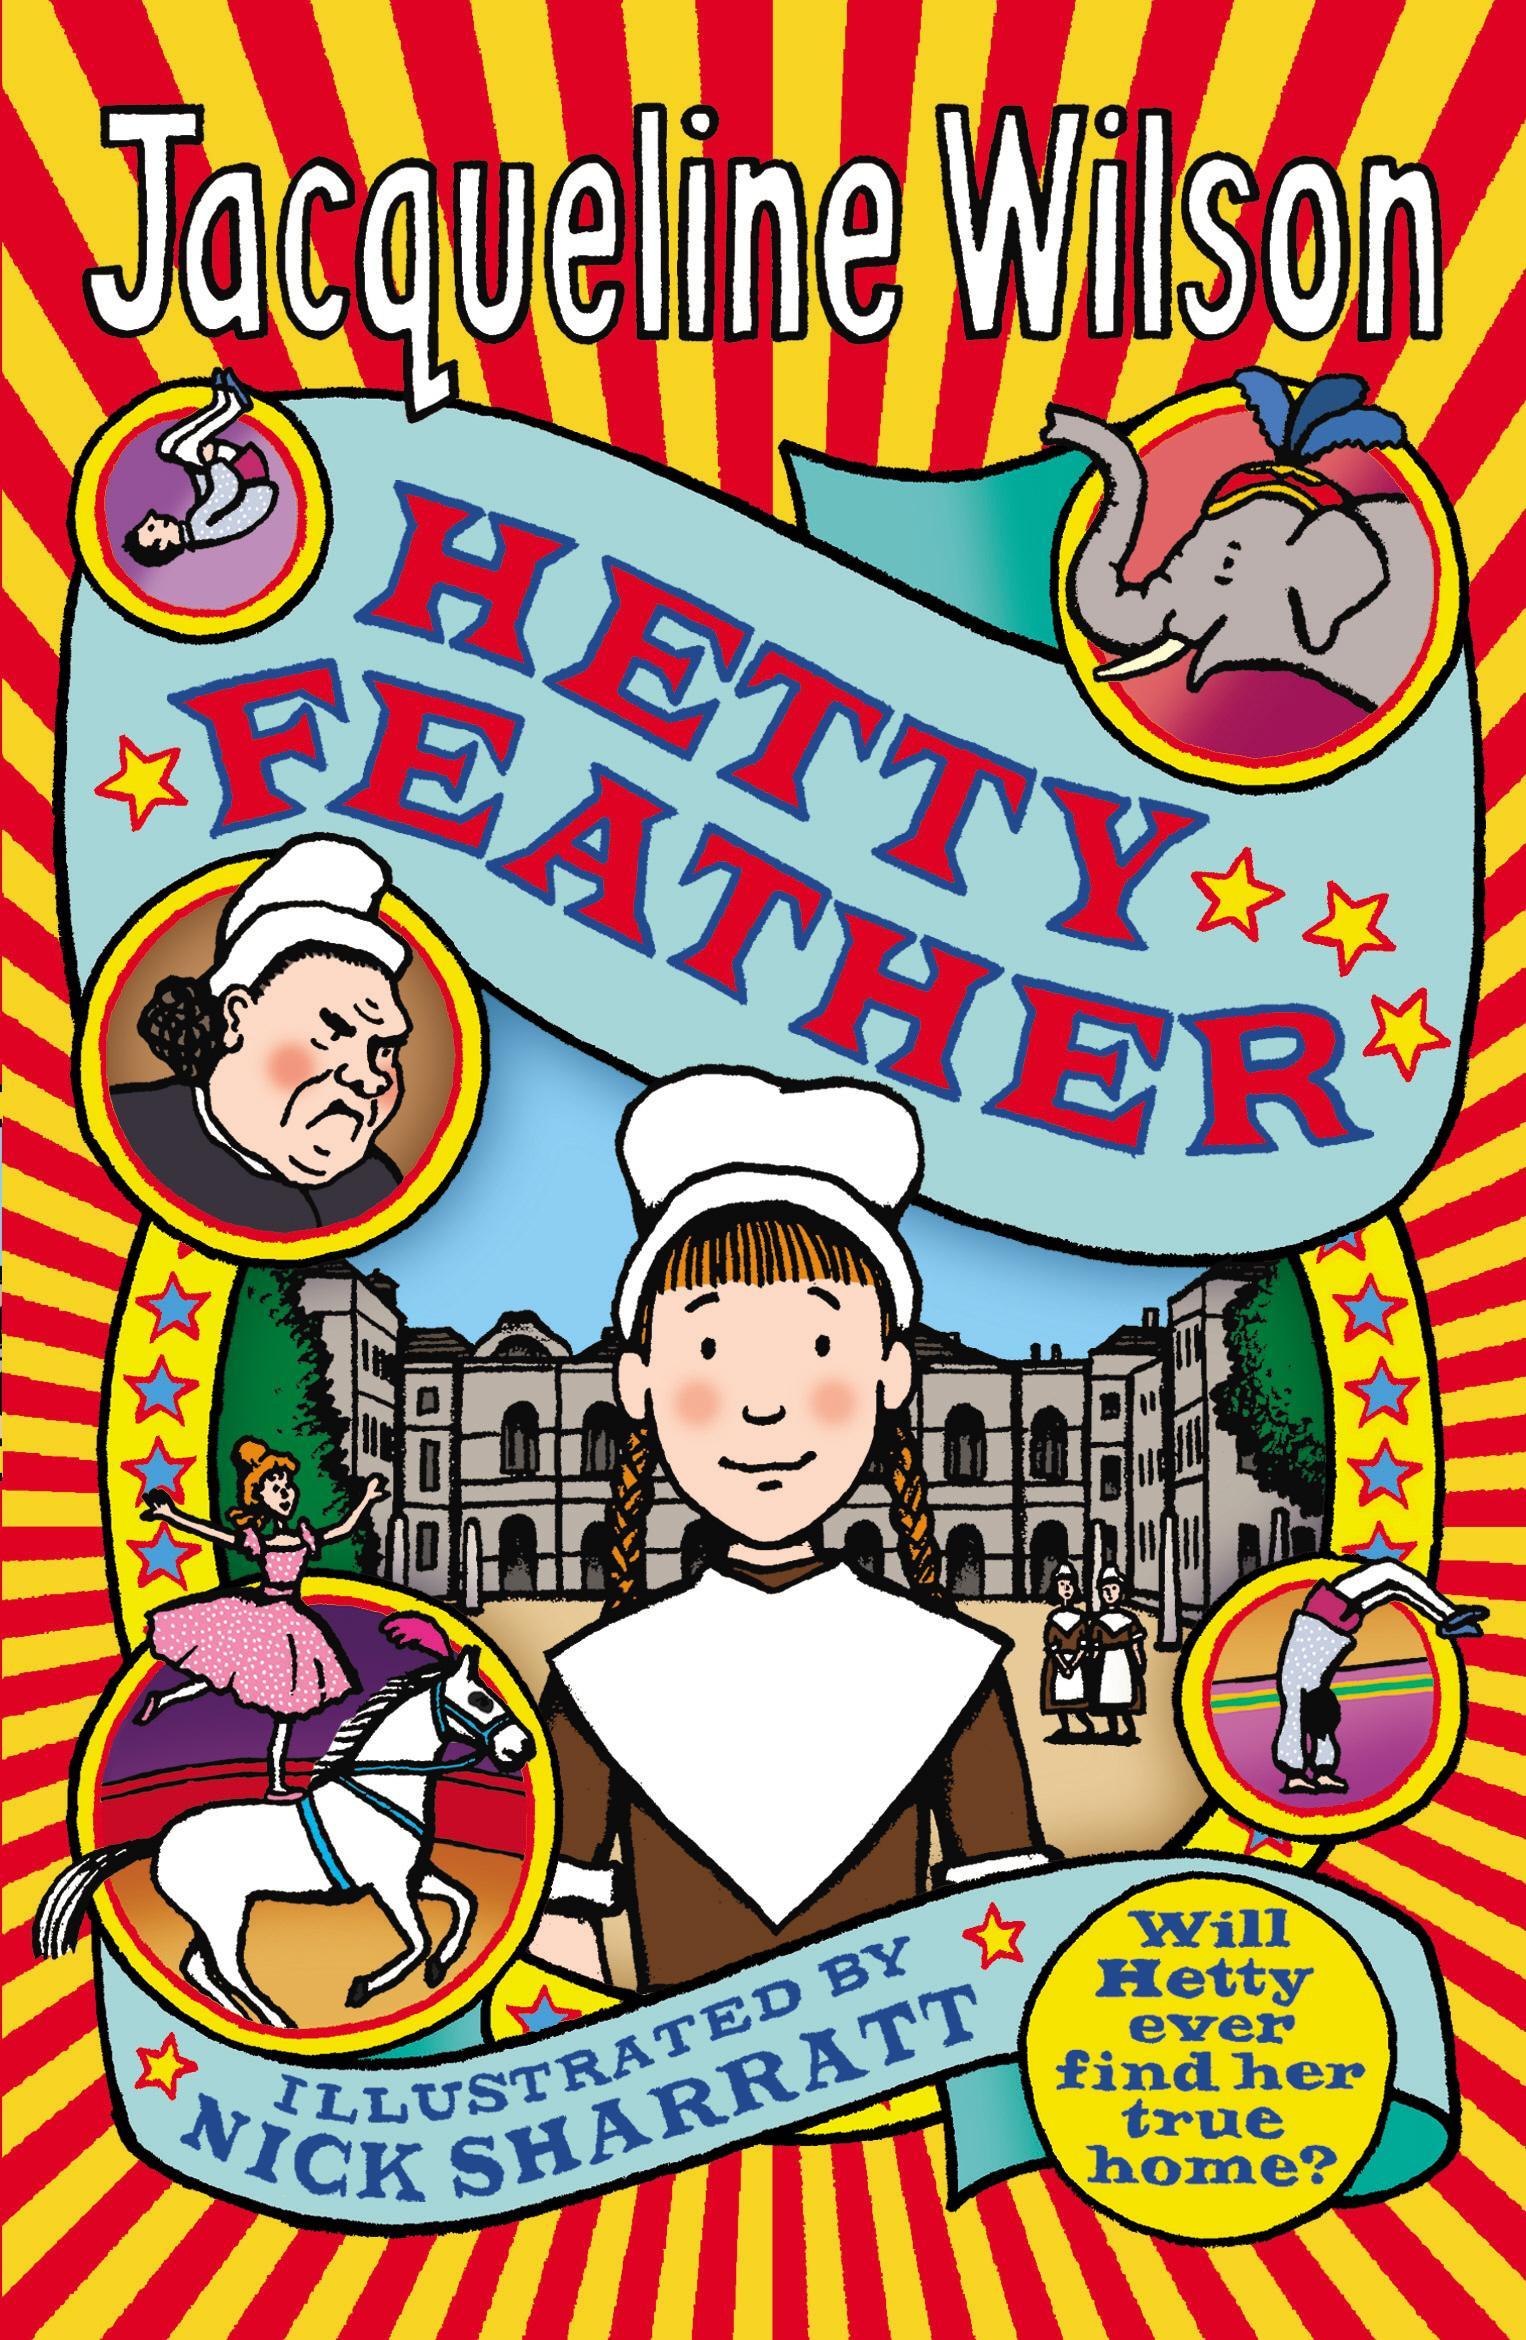 Hetty Feather - Jacqueline Wilson